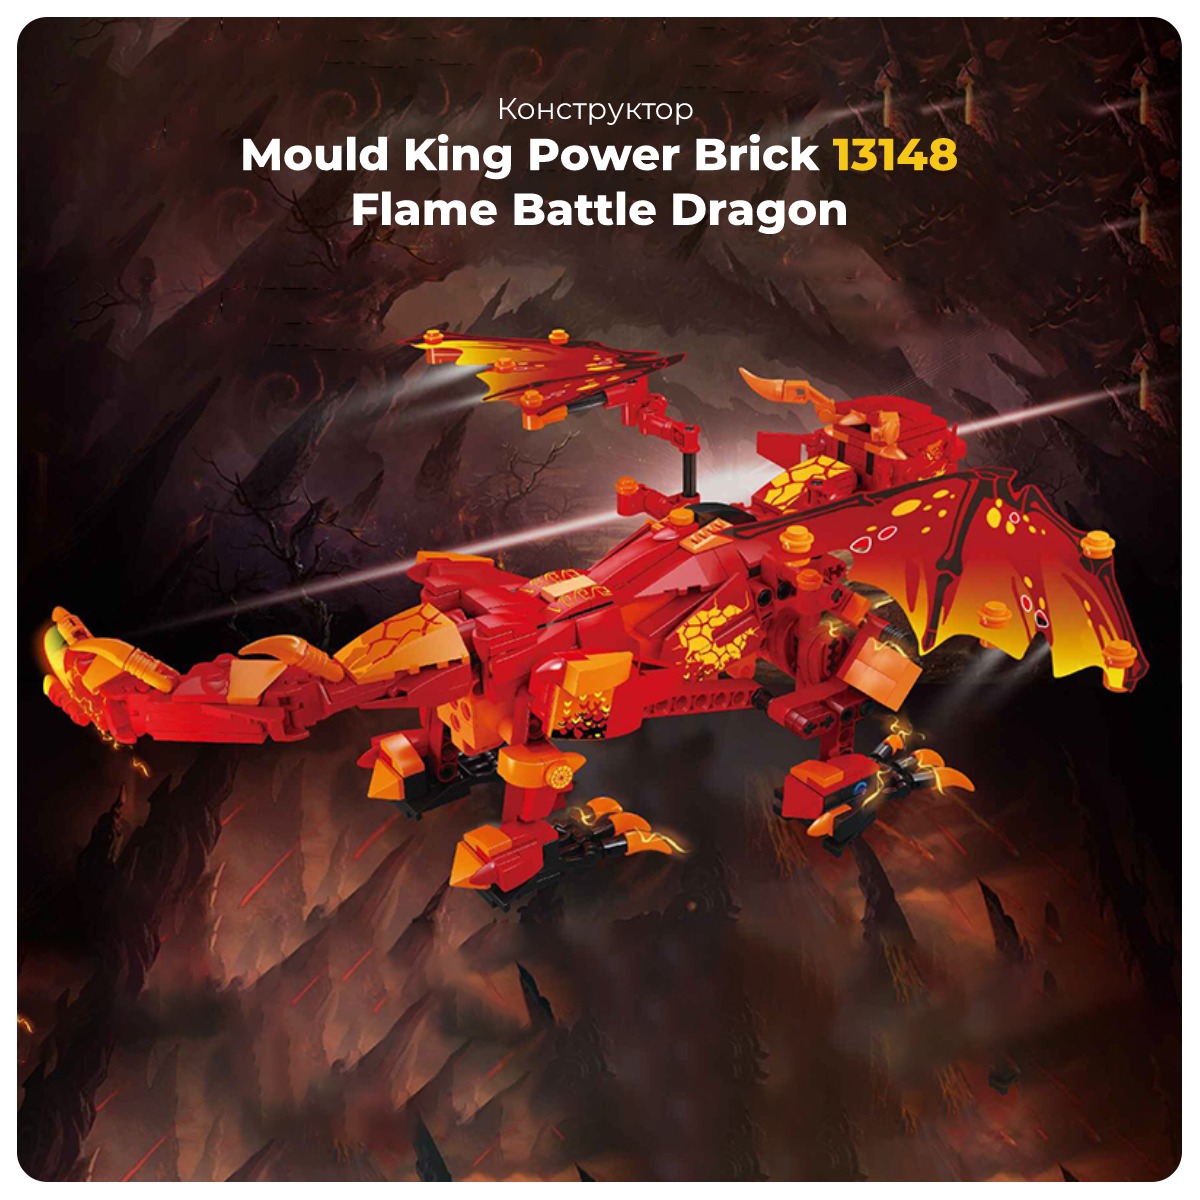 Mould-King-Power-Brick-13148-Flame-Battle-Dragon-01